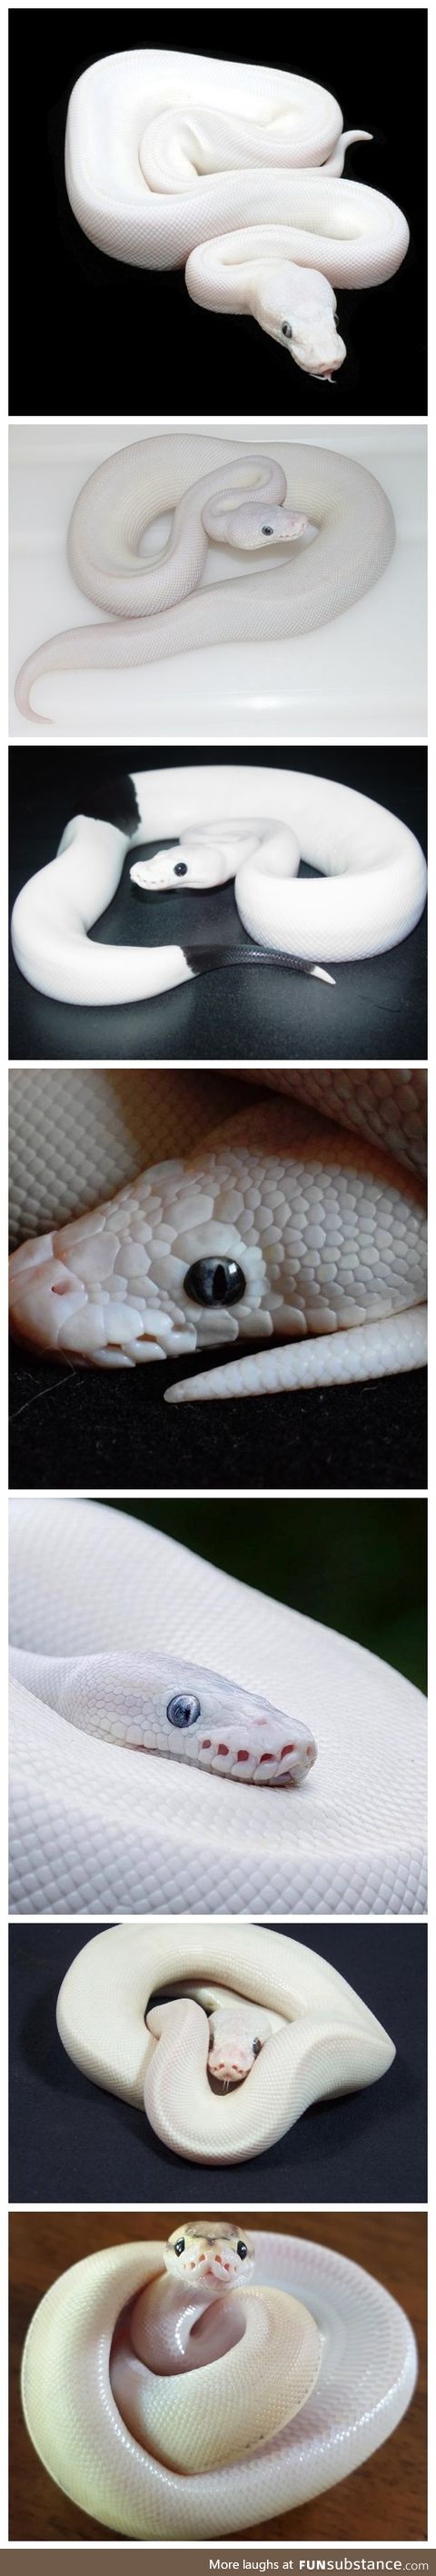 Blue-Eyes White (̶D̶r̶a̶g̶o̶n̶)̶ Python